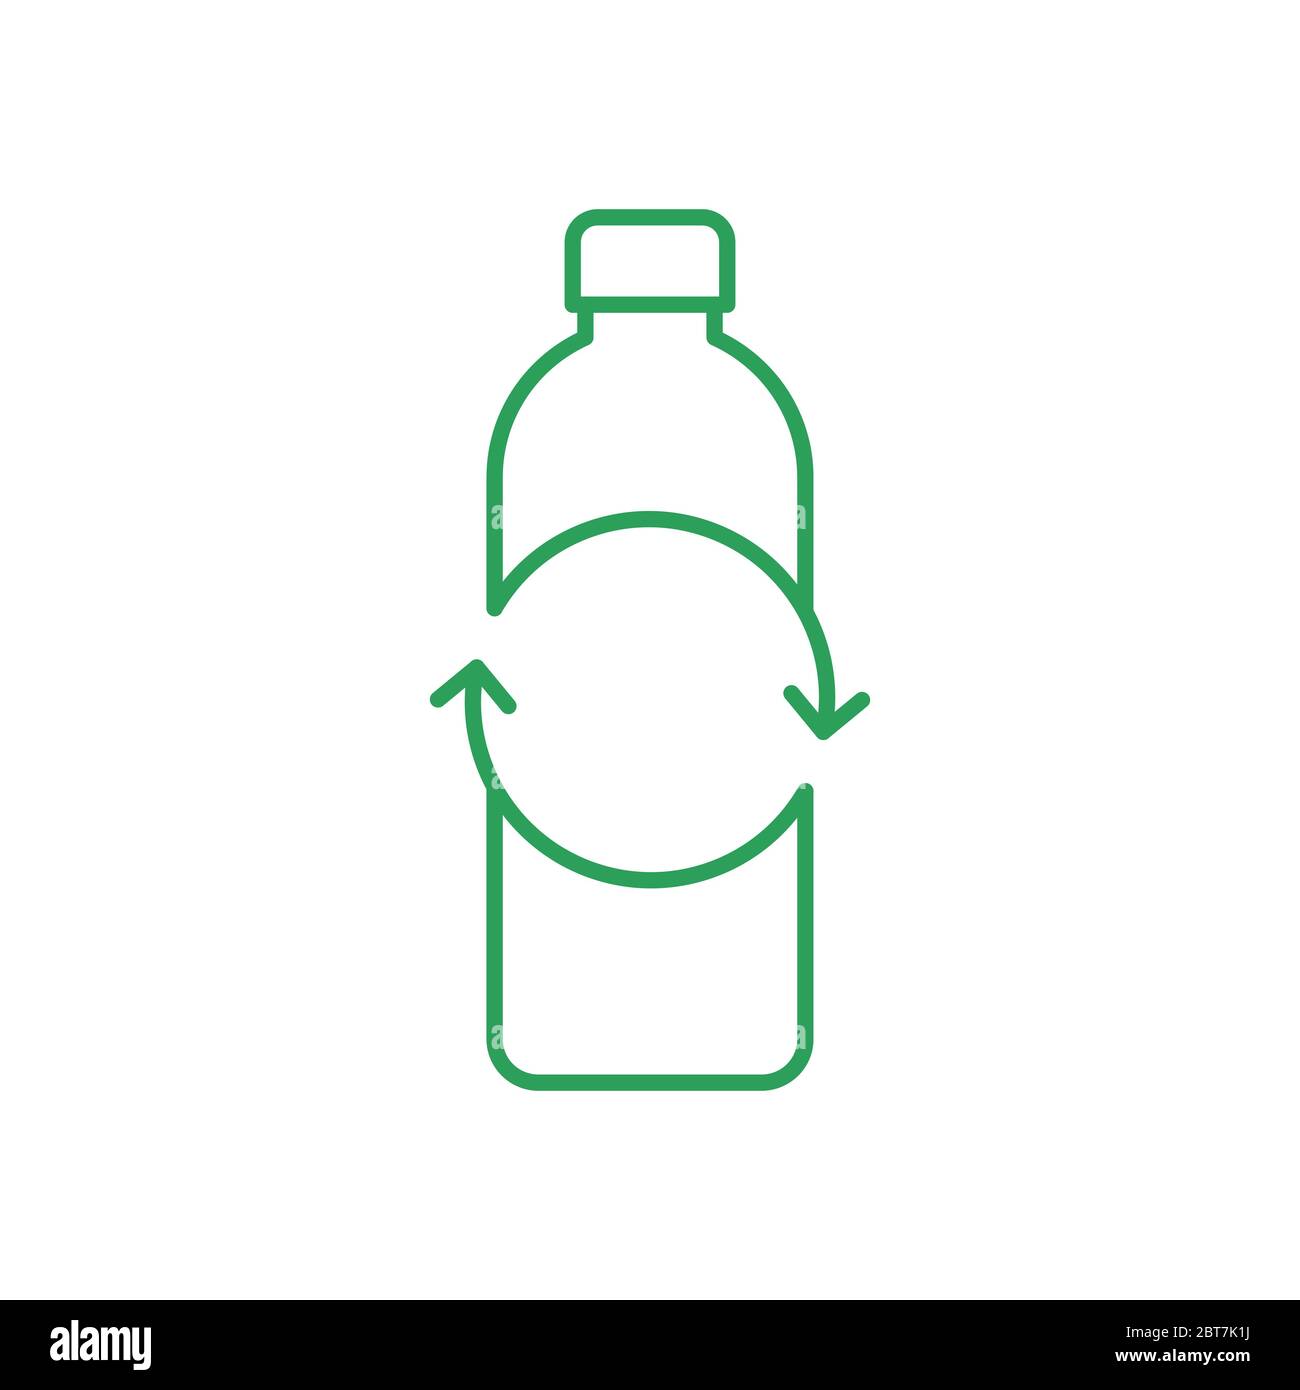 Schild für Recycling-Kunststoffflaschen. Leere Flasche mit Kreispfeilen. Symbol für dünne Linie. Grüne Umrandung auf weißem Hintergrund. Bewusstsein für Kunststoffverschmutzung. Vektor Stock Vektor